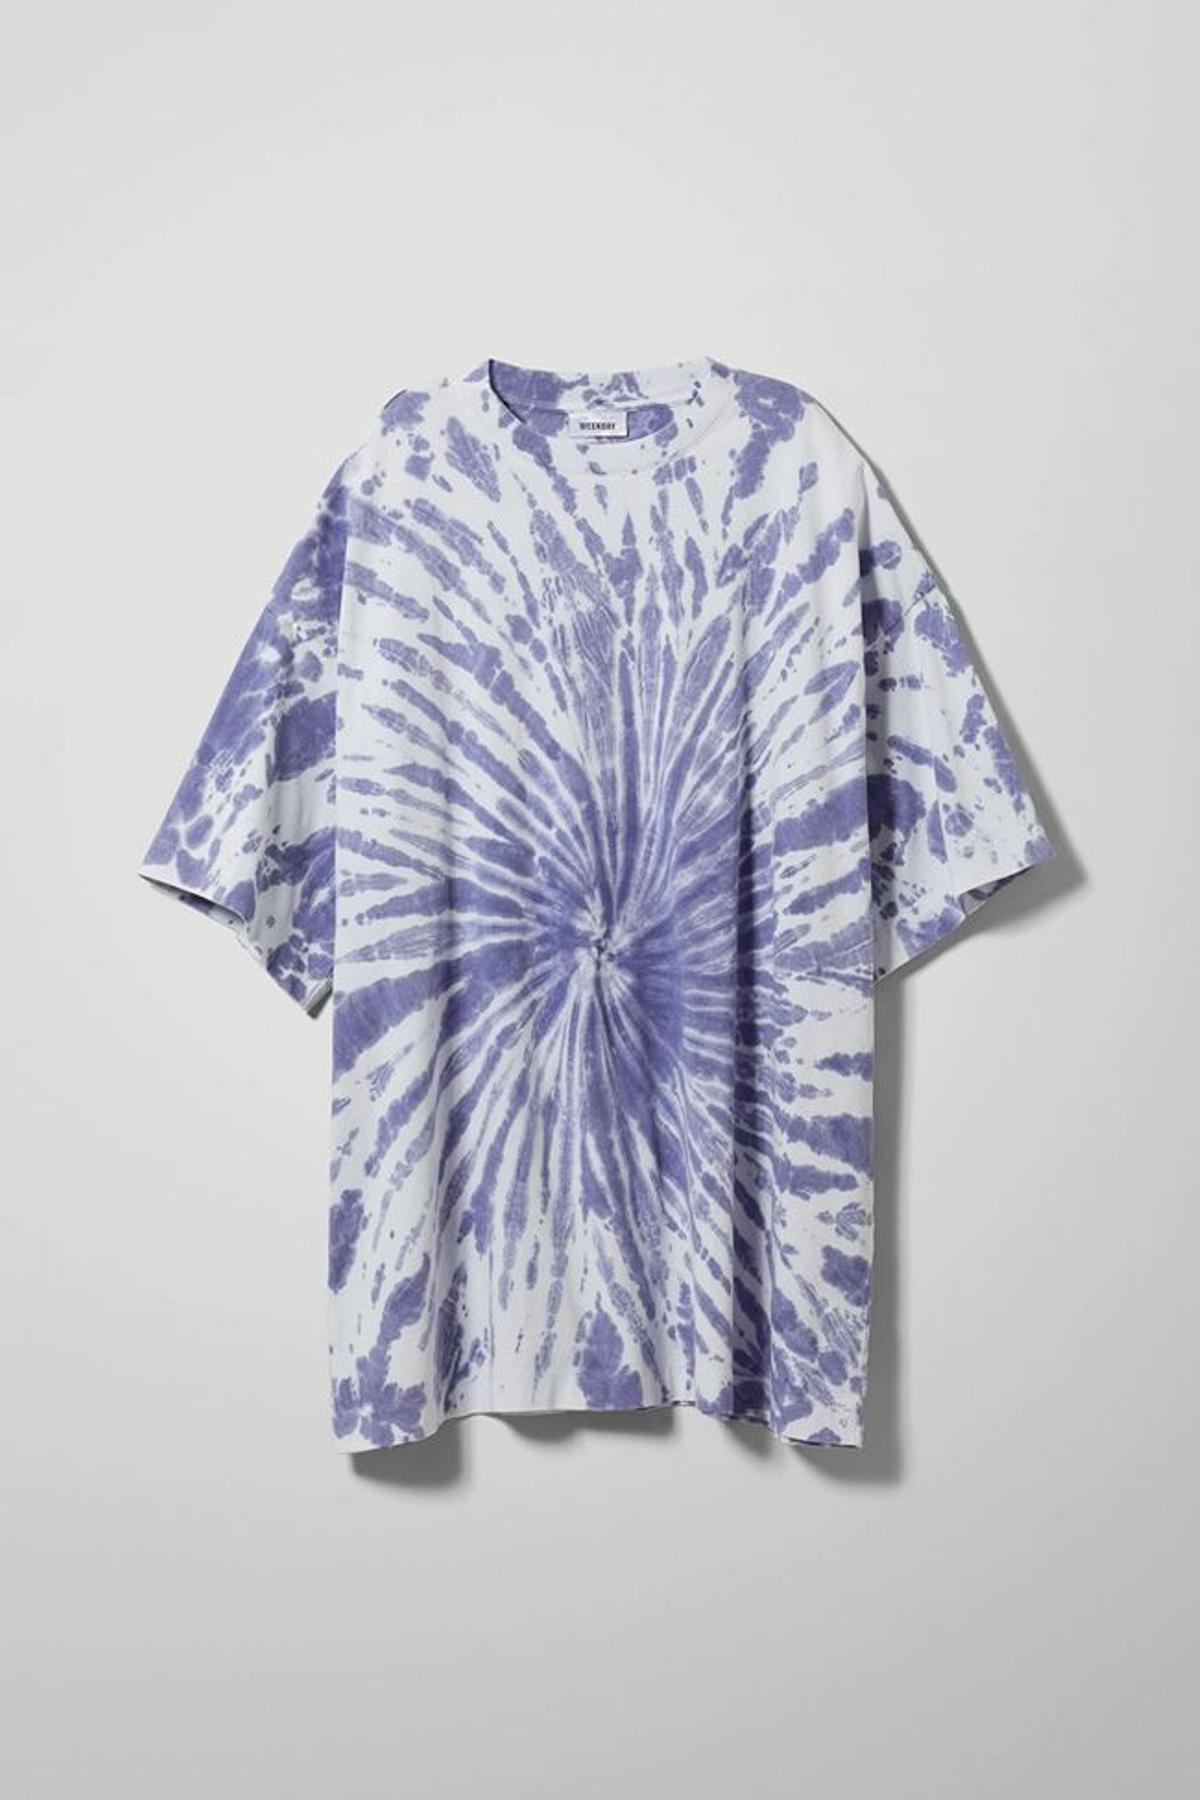 Camiseta 'oversize' con estampado 'tie-dye' morado y blanco, de WeekDay